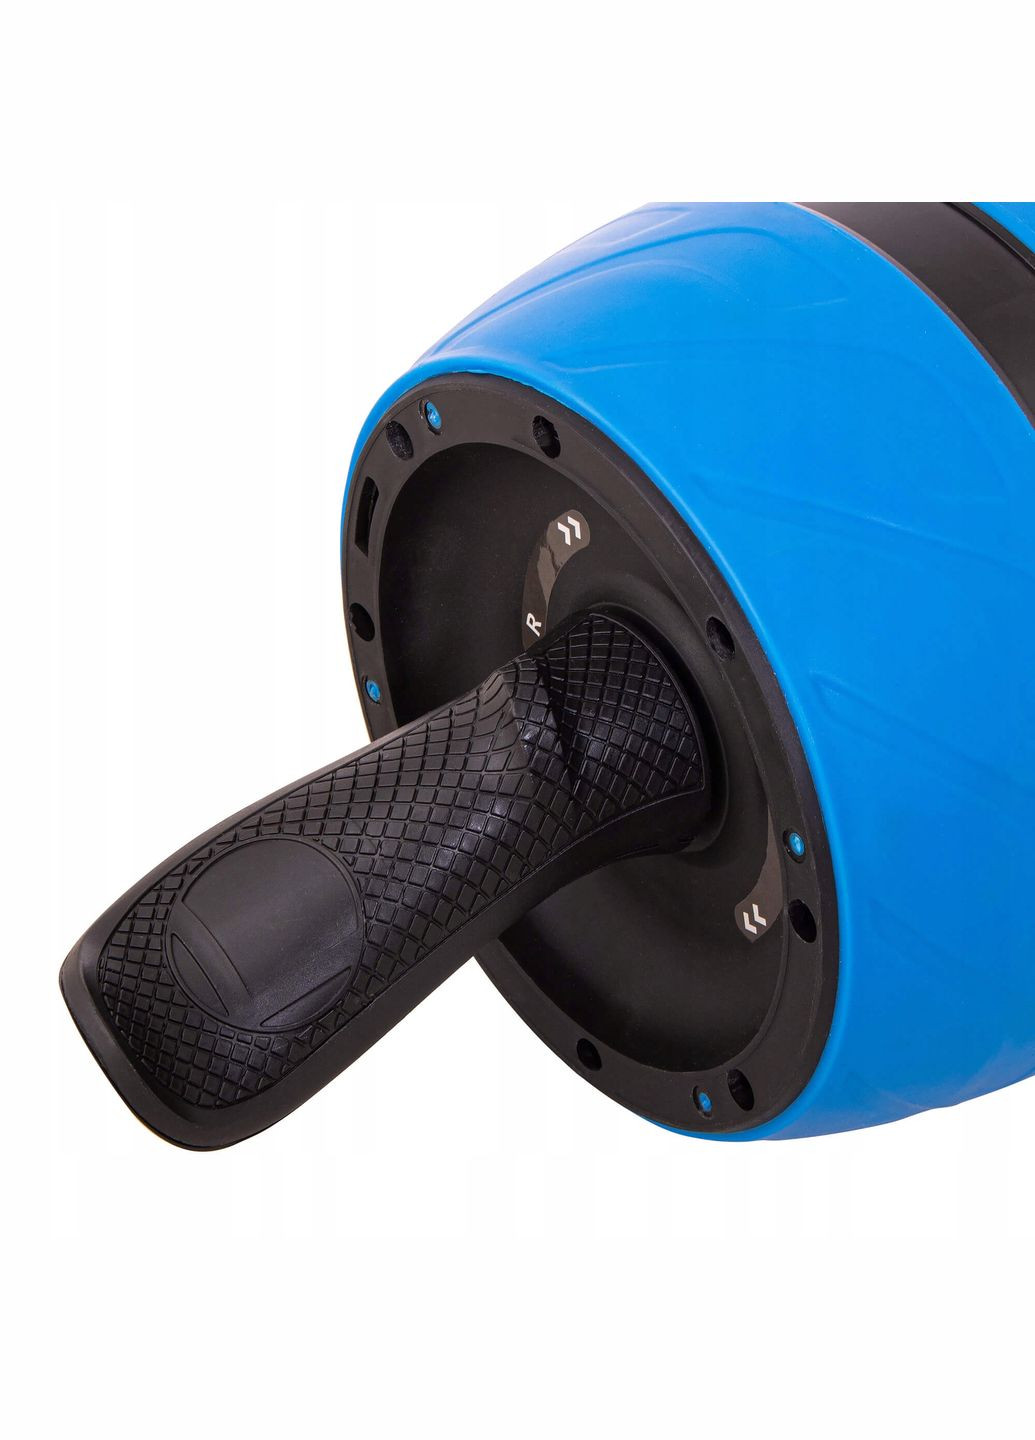 Ролик (колесо) для пресса с возвратным механизмом AB Wheel Blue/Black Springos fa5000 (275653784)